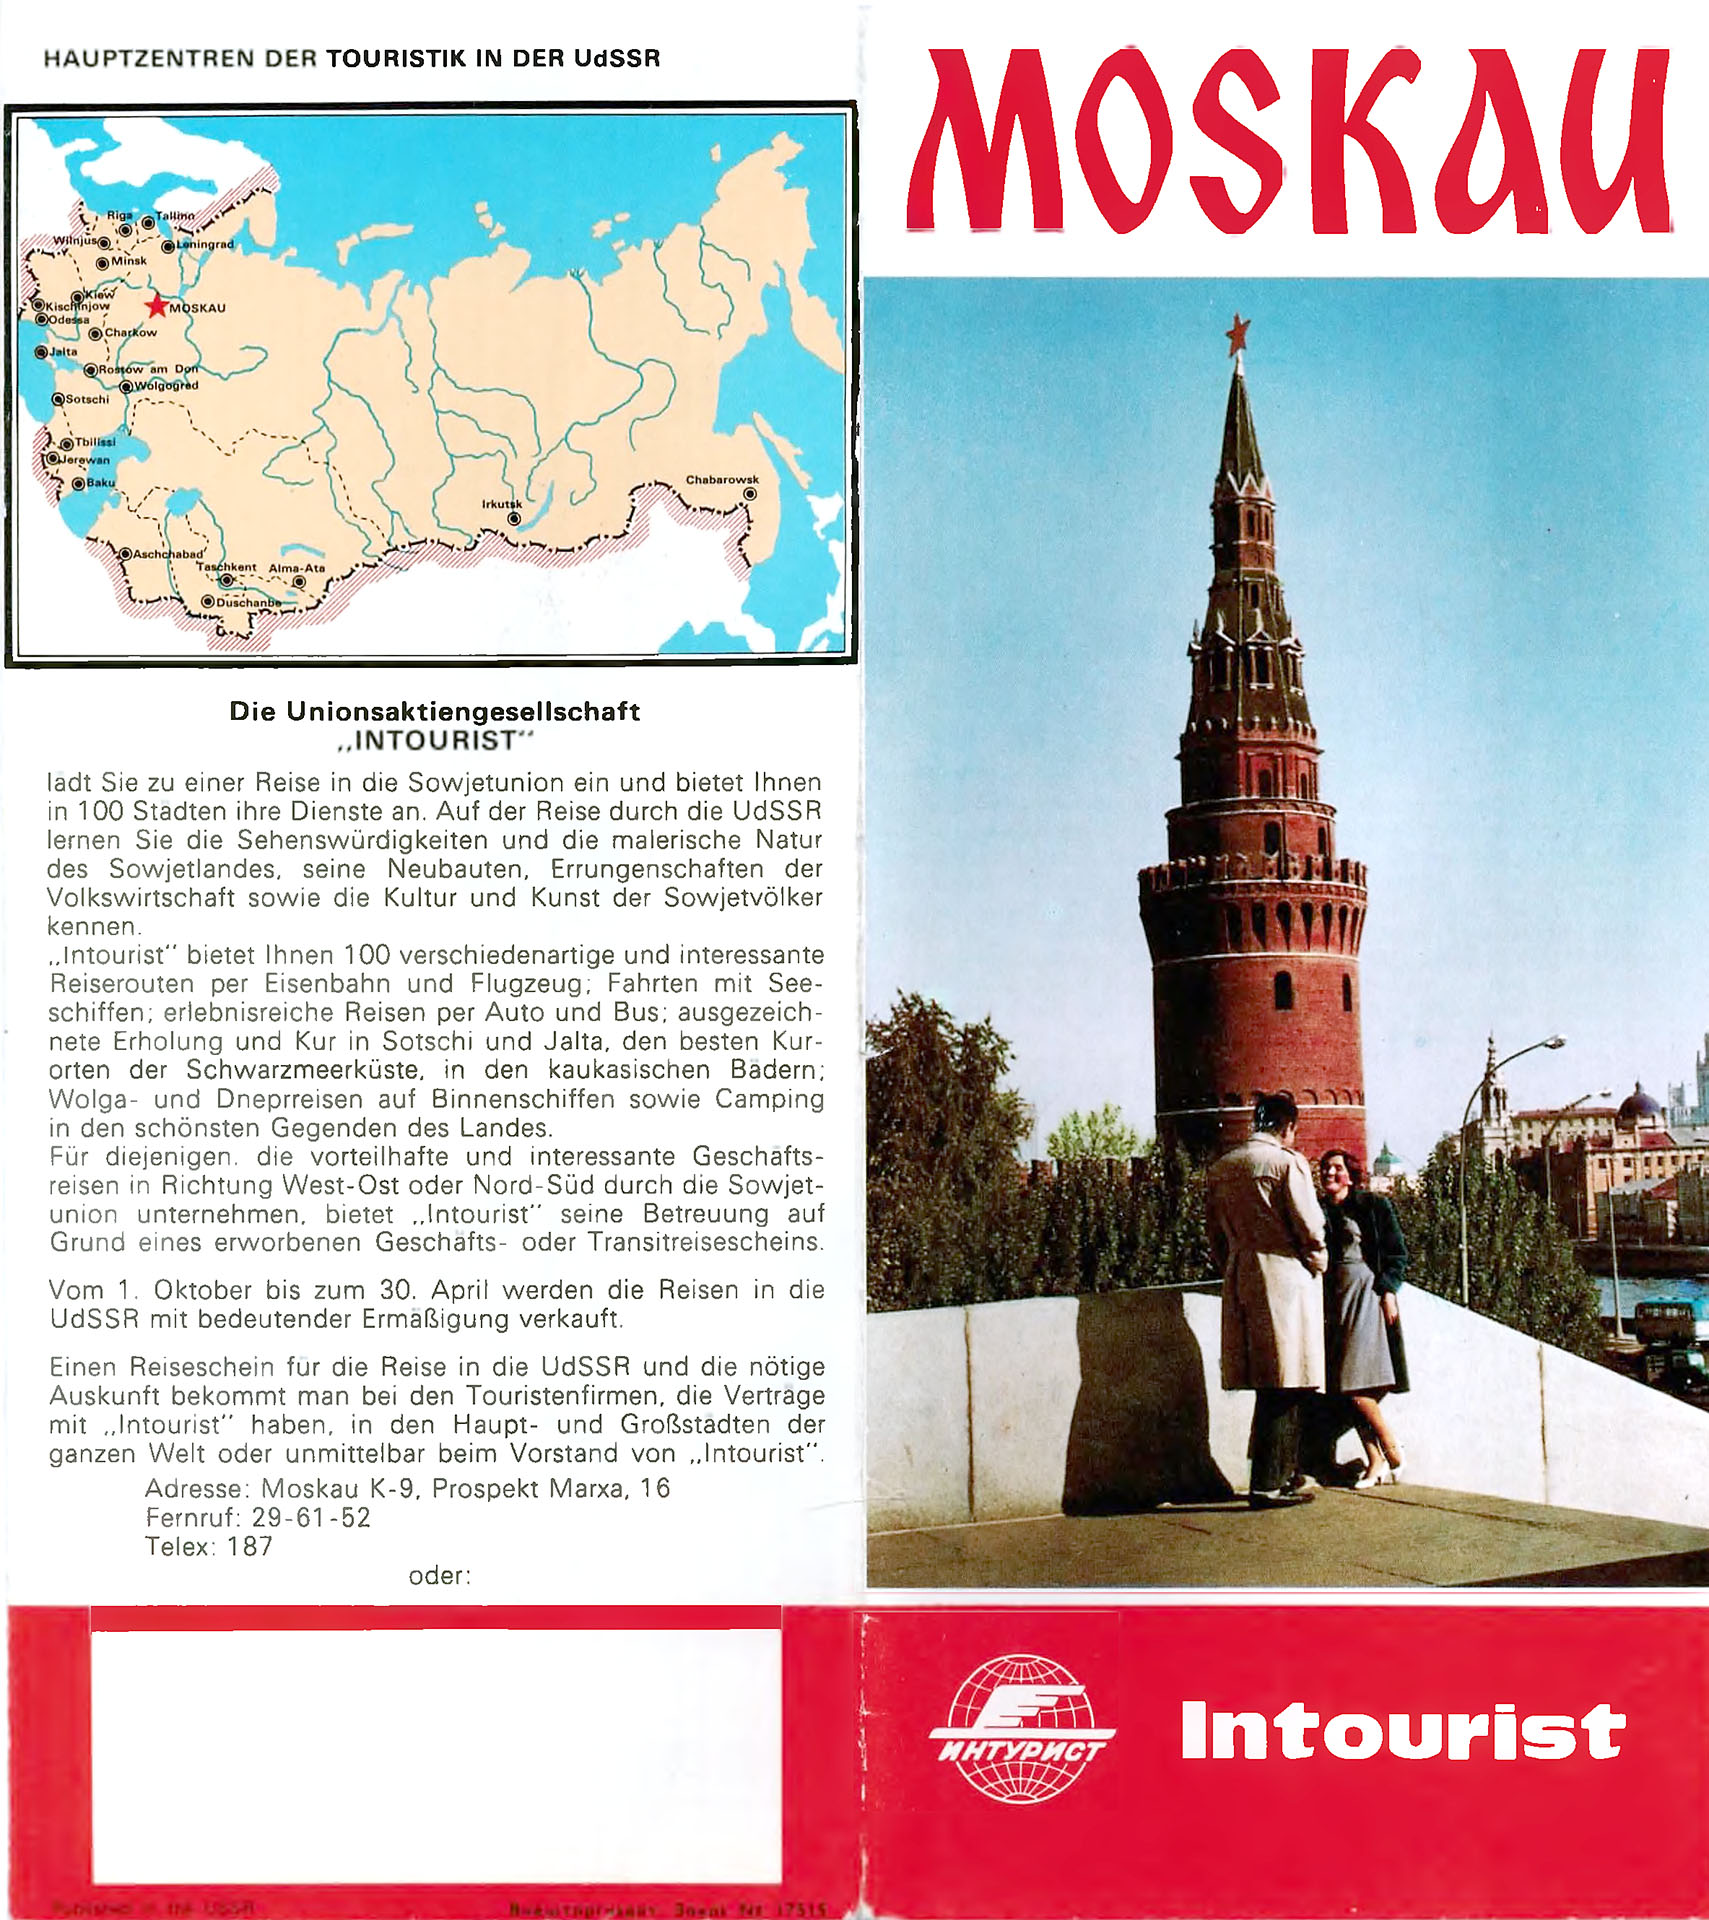 Moskau - Intourist Reiseprospekt - Intourist